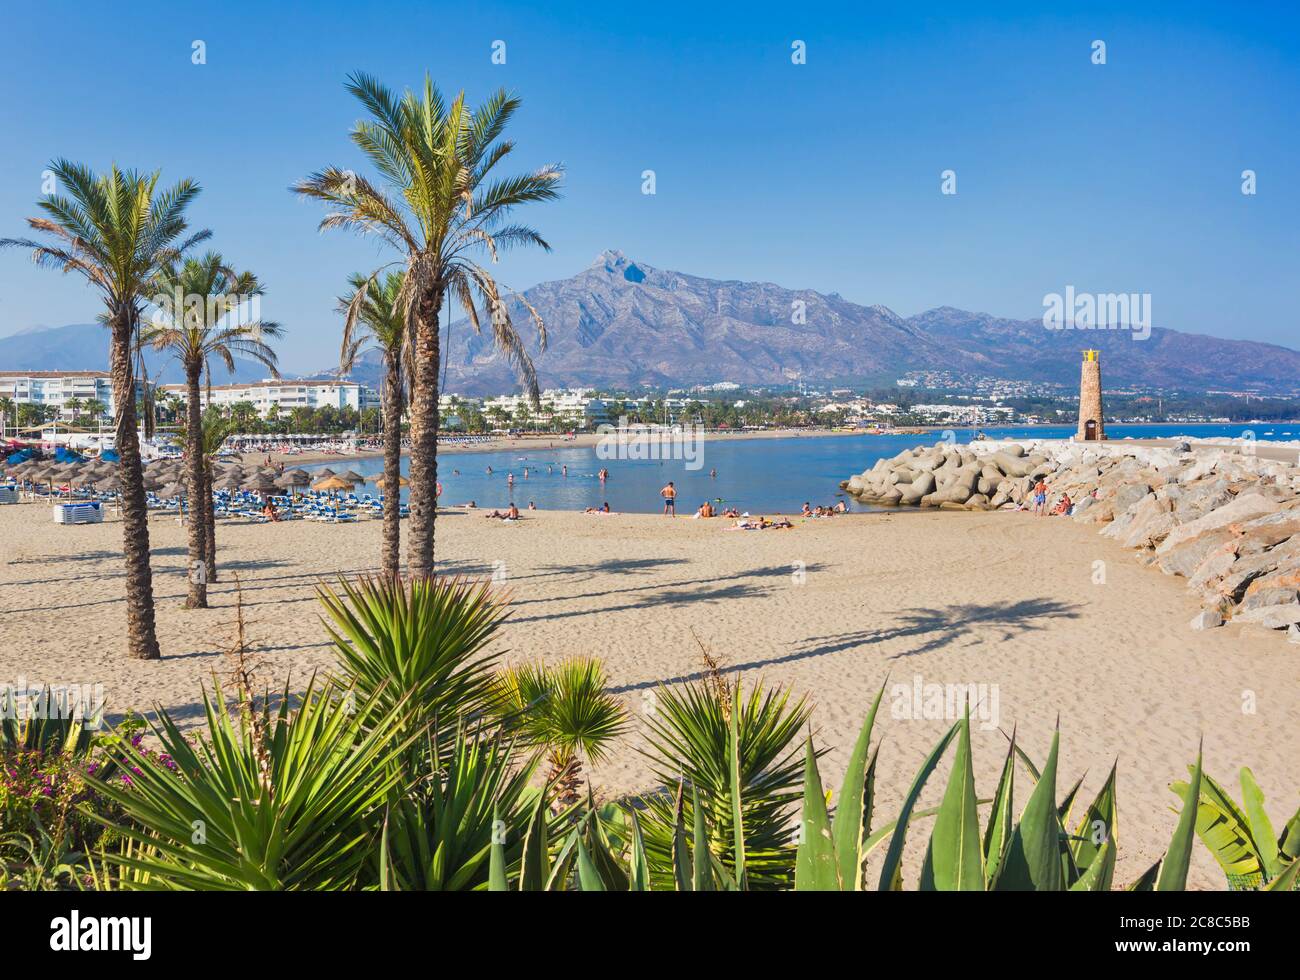 Puerto Banus beach. Marbella. Malaga province. Costa del Sol. Andalucia.  Spain Stock Photo - Alamy